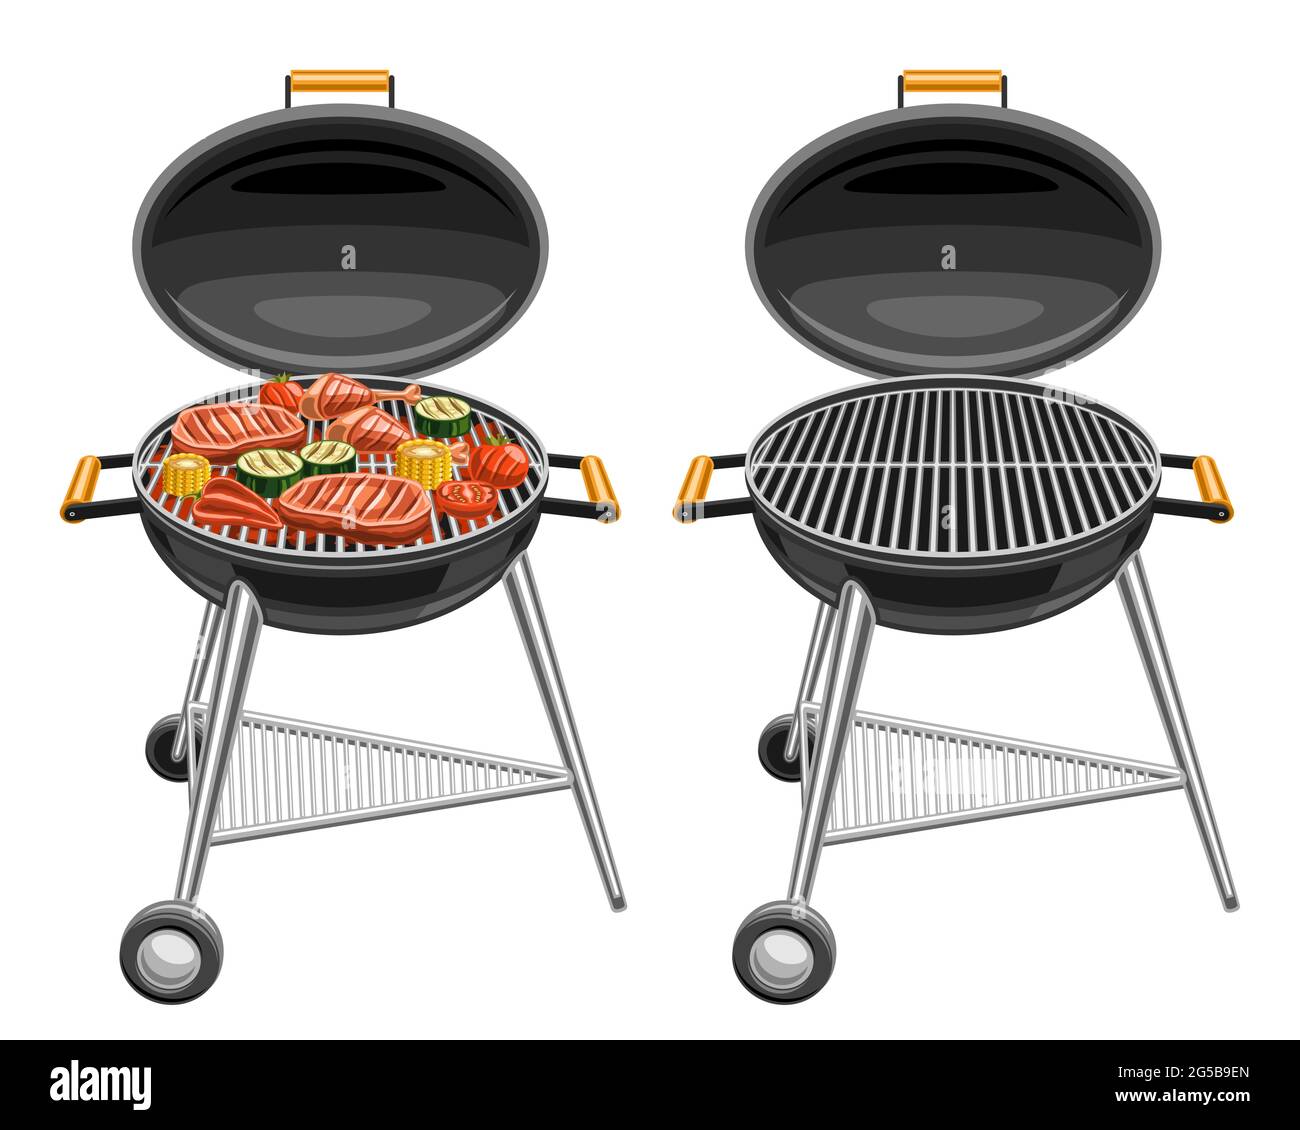 Illustrazioni vettoriali di grigliate al barbecue, grigliate con bistecche di maiale arrosto e gustose verdure alla griglia, barbecue rotondo isolato con griglia vuota Illustrazione Vettoriale